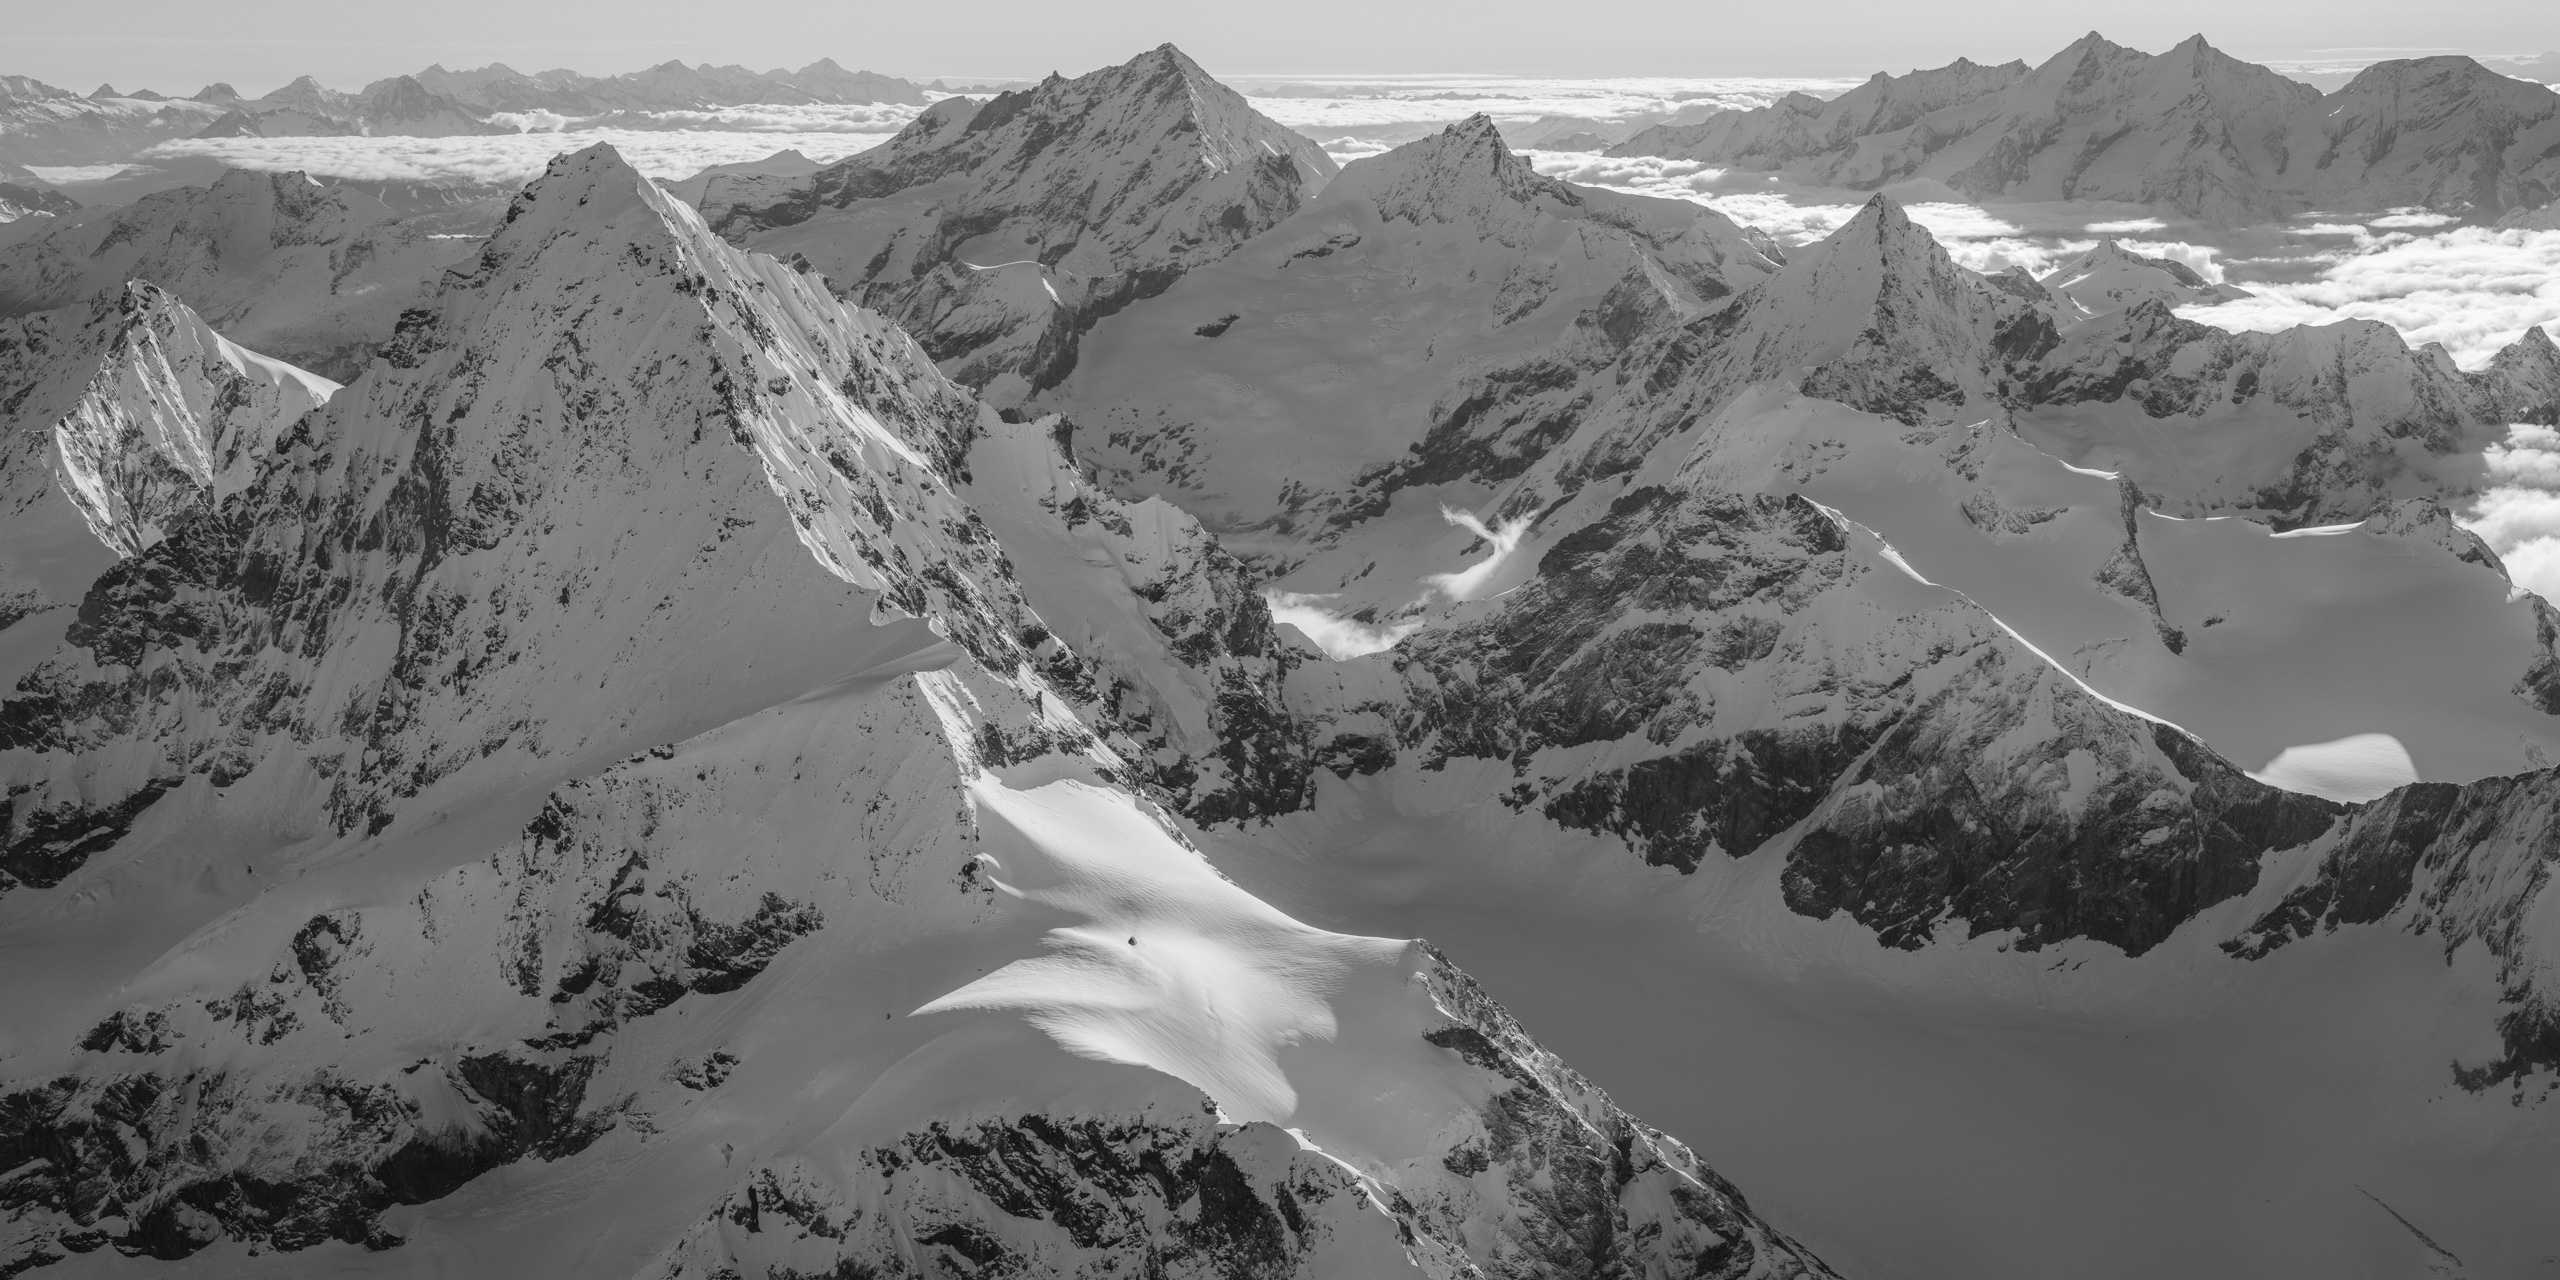 Poster panoramique noir et blanc des montagnes des Alpes du Valais - val d'Hérens, Val d'Anniviers, Zermatt et Saas-Fee